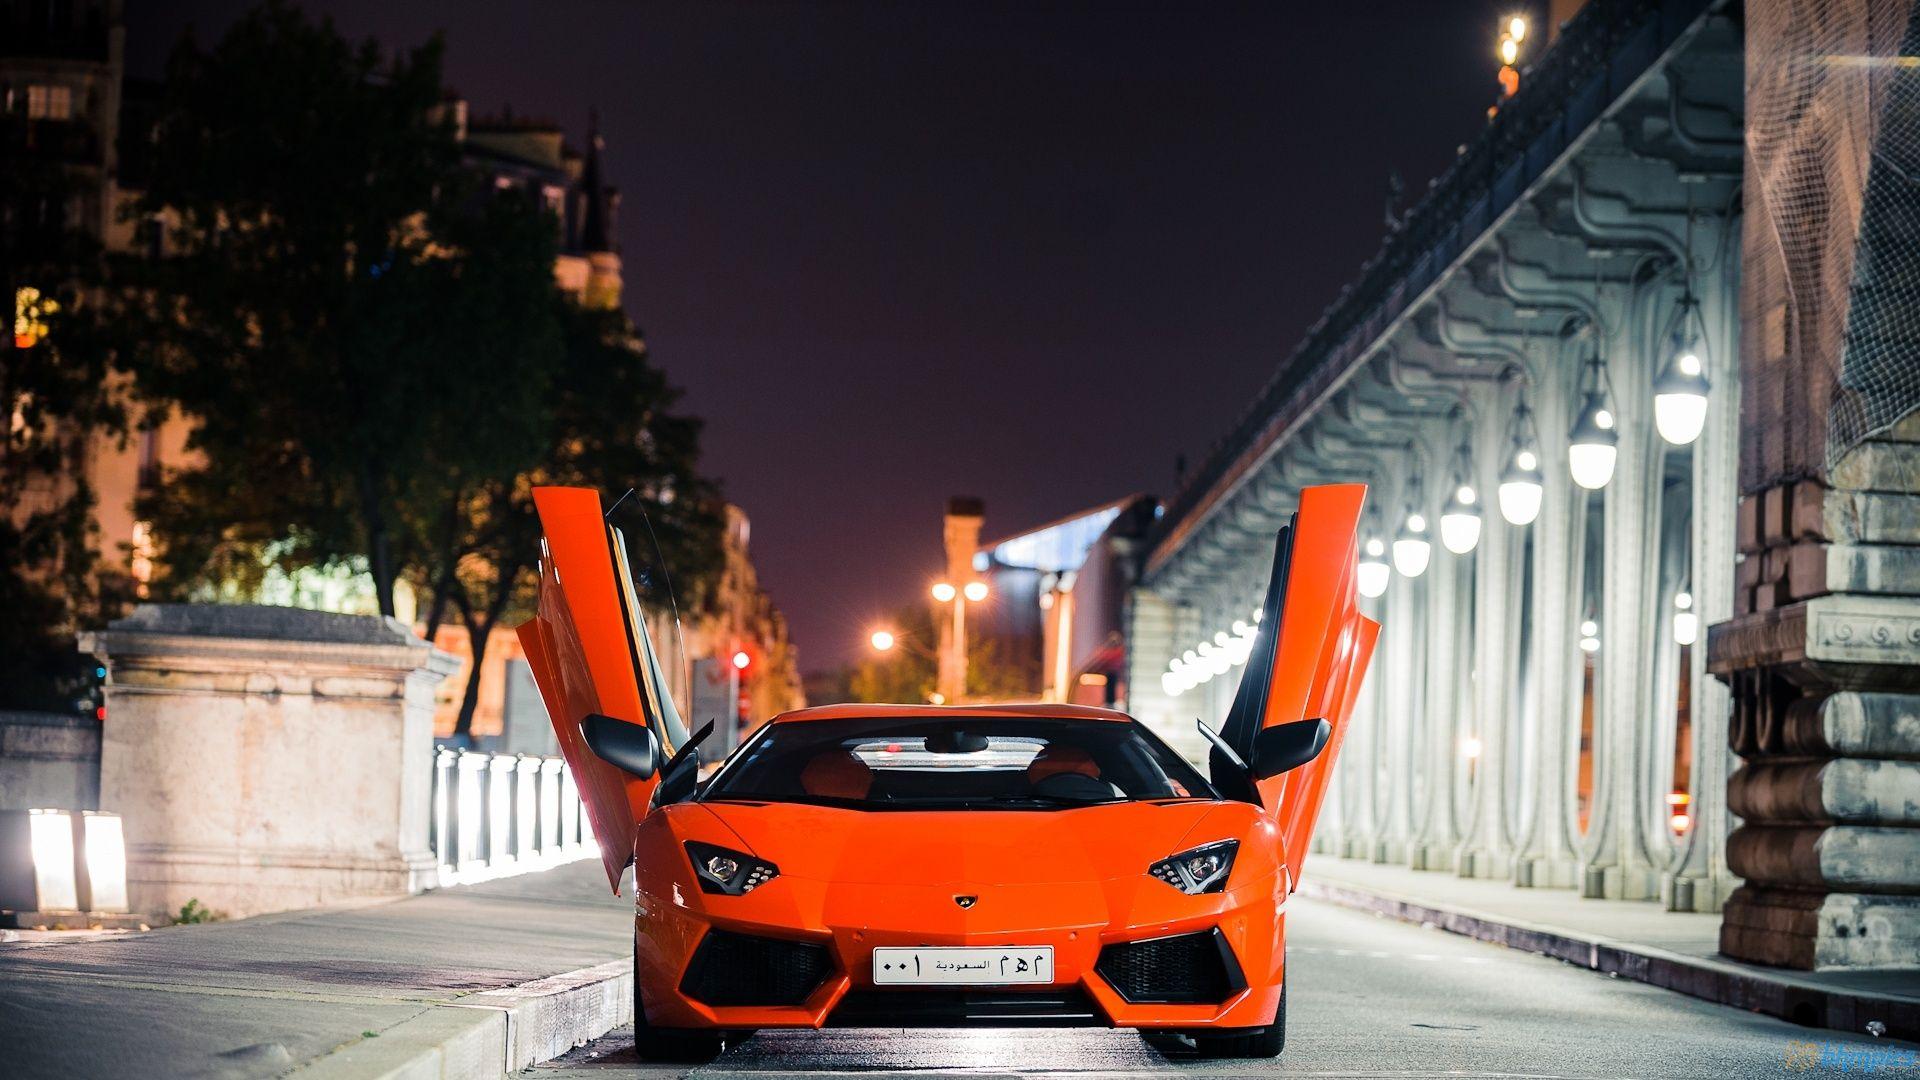 Lamborghini Aventador At Night